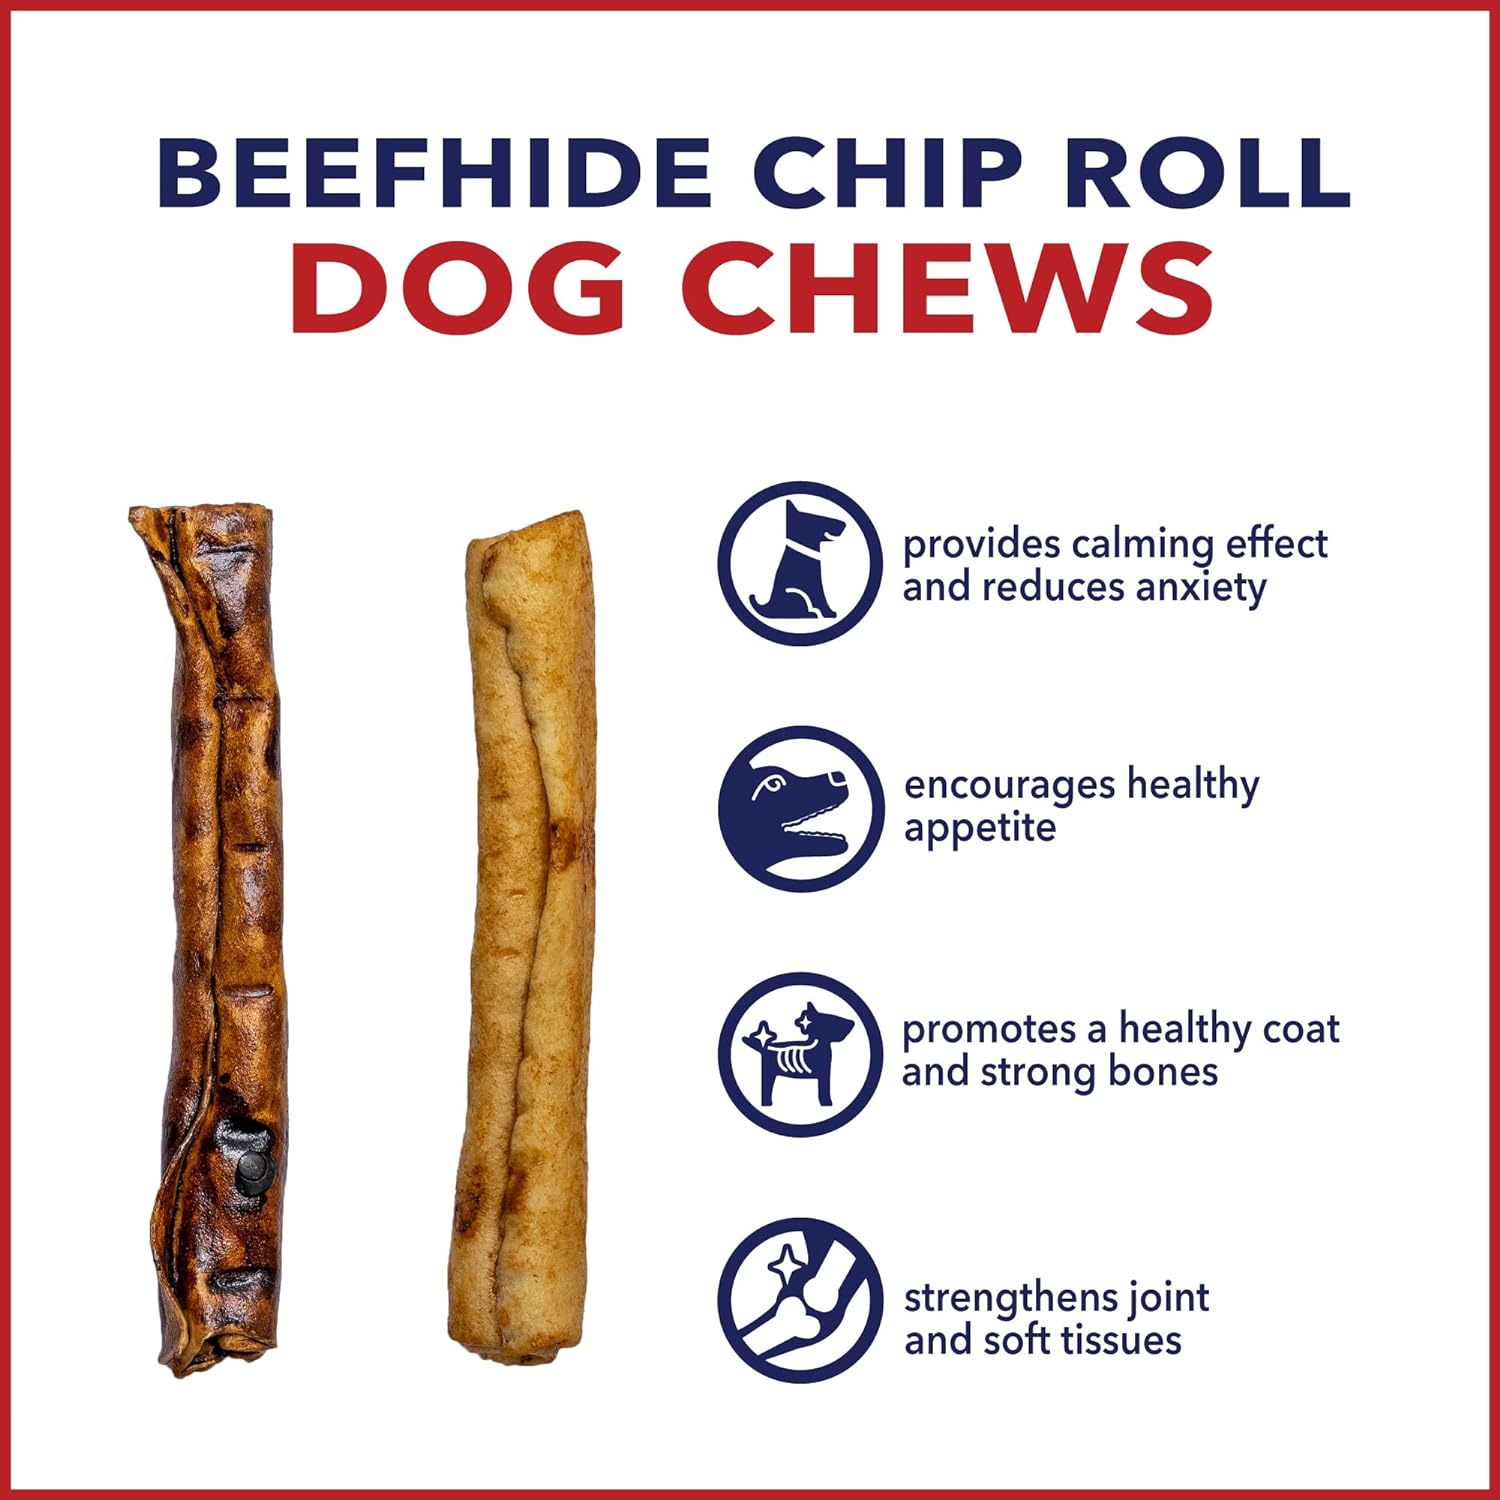 Pet Factory American Beefhide 5" Chip Rolls Dog Chew Treats - Beef & Chicken Flavor, 50 Count/1 Pack : Pet Supplies